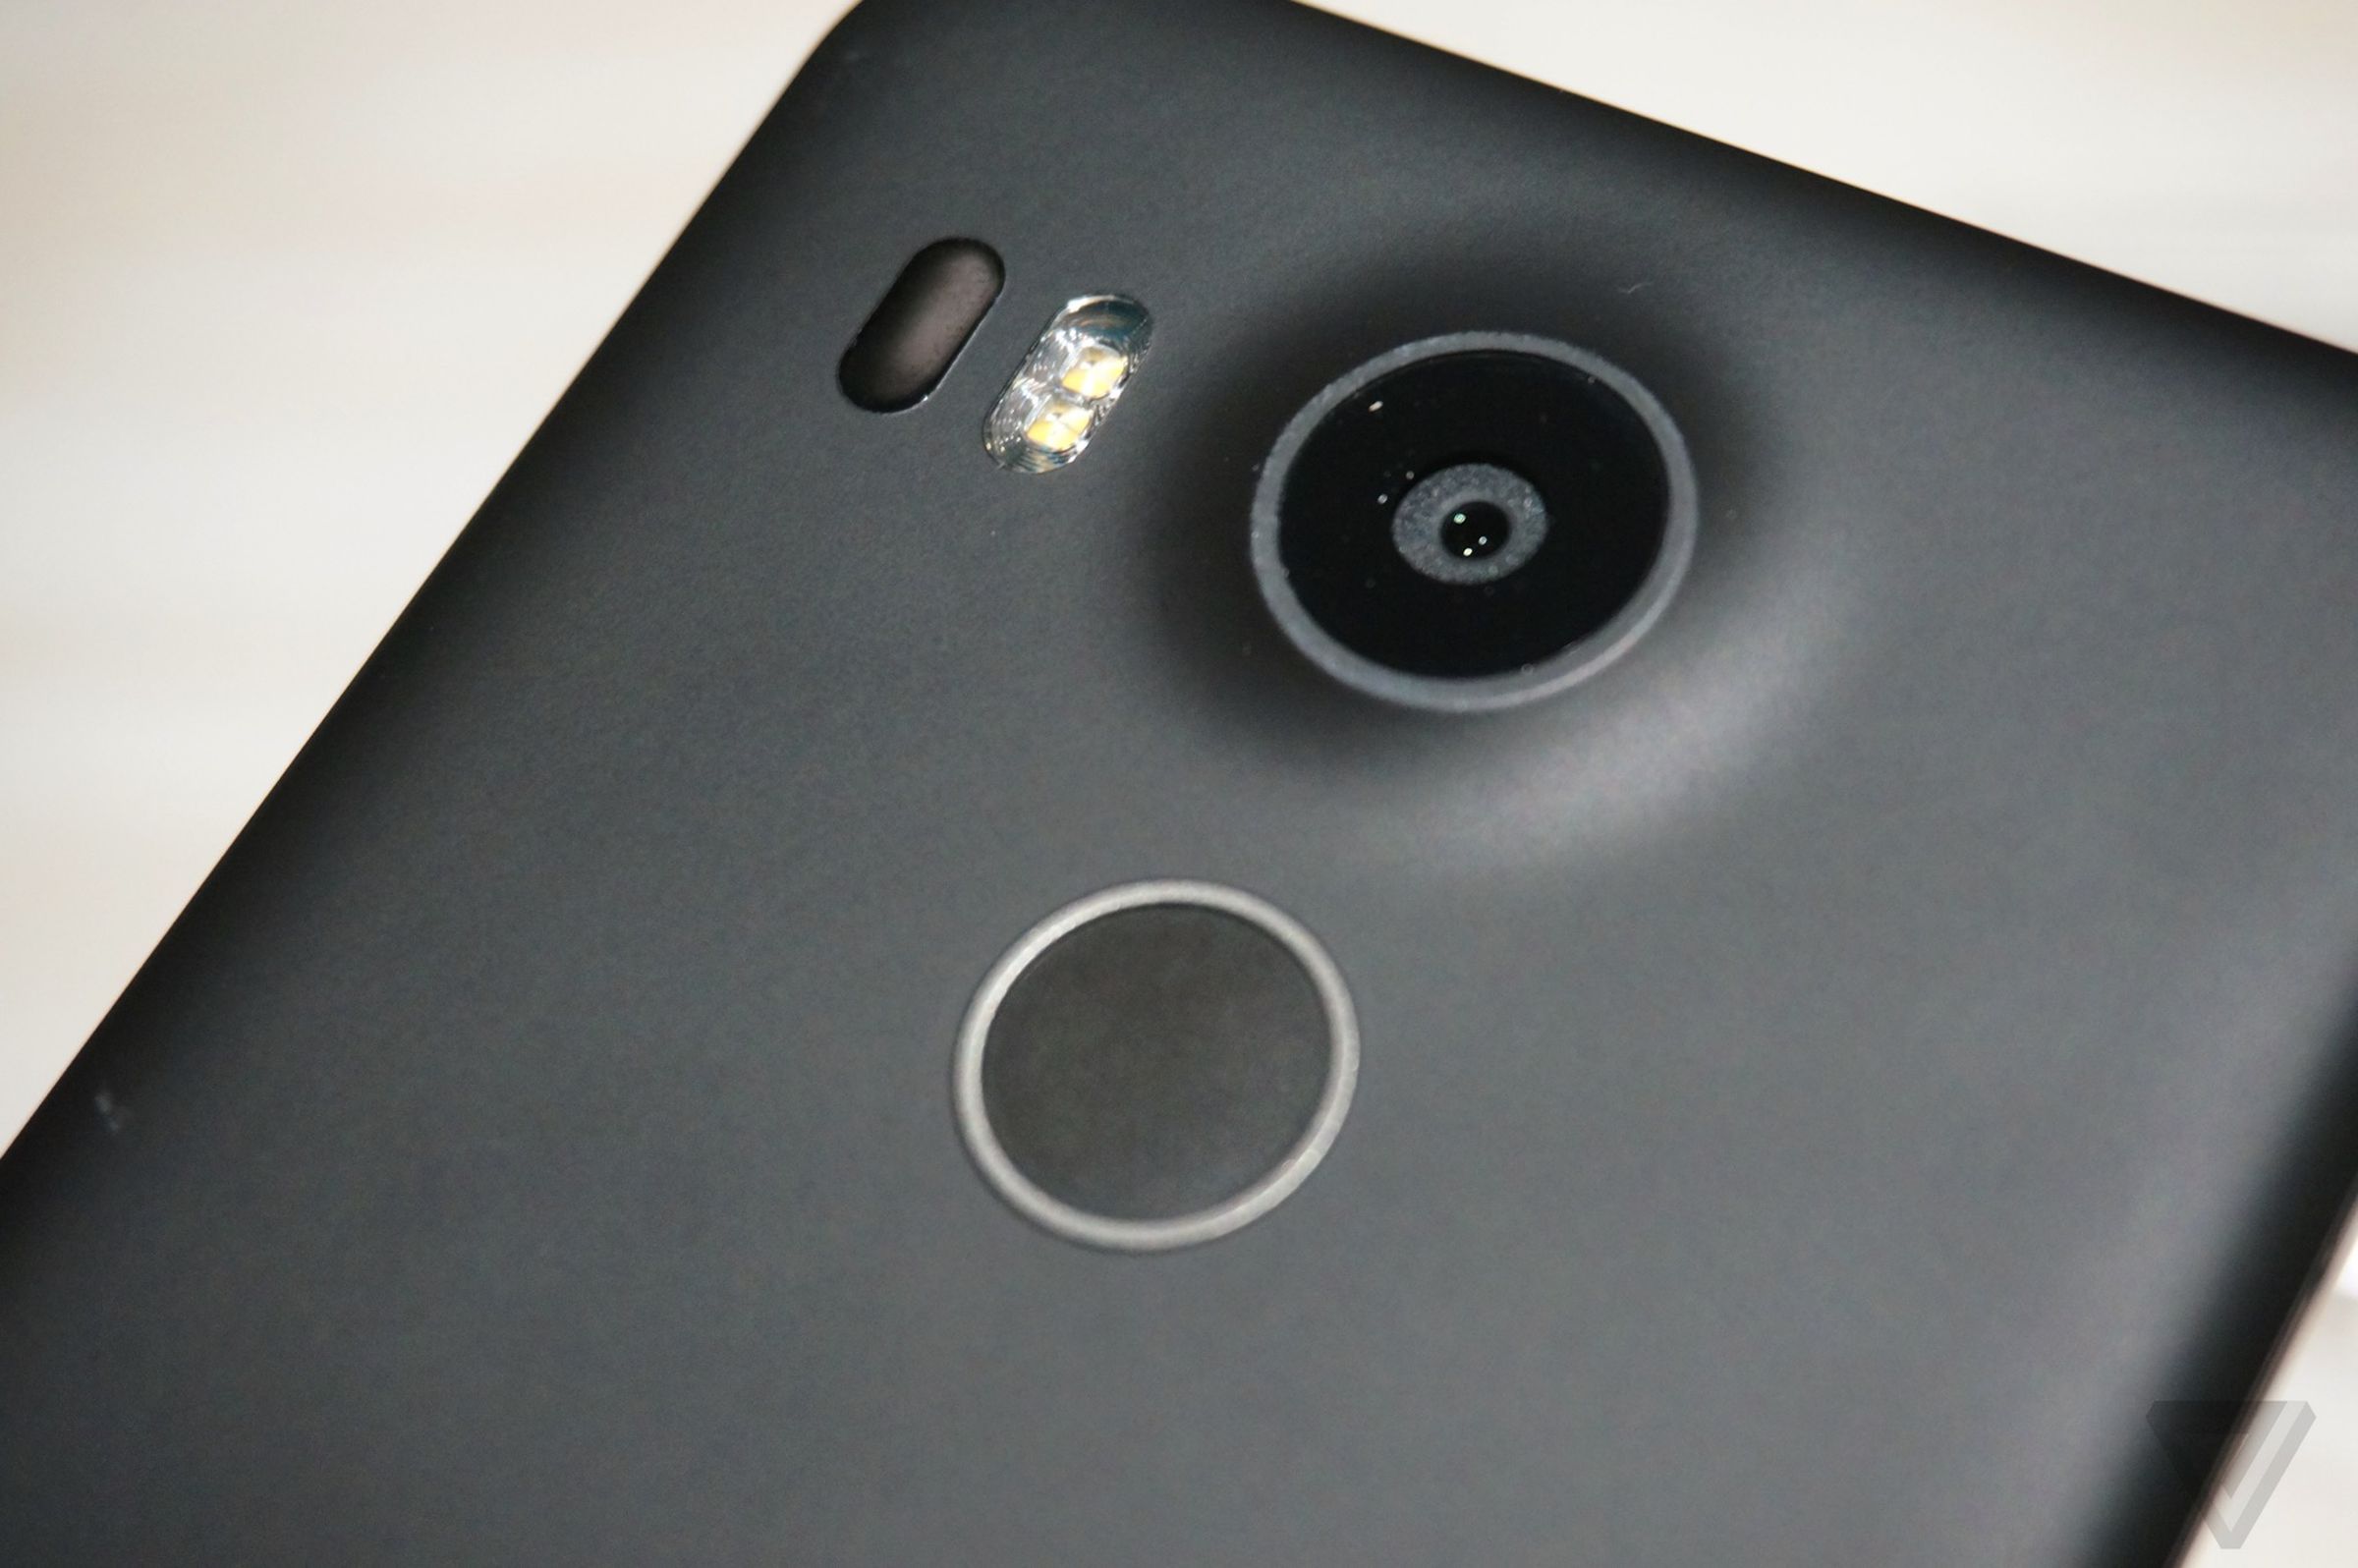 Nexus 5X hands-on photos